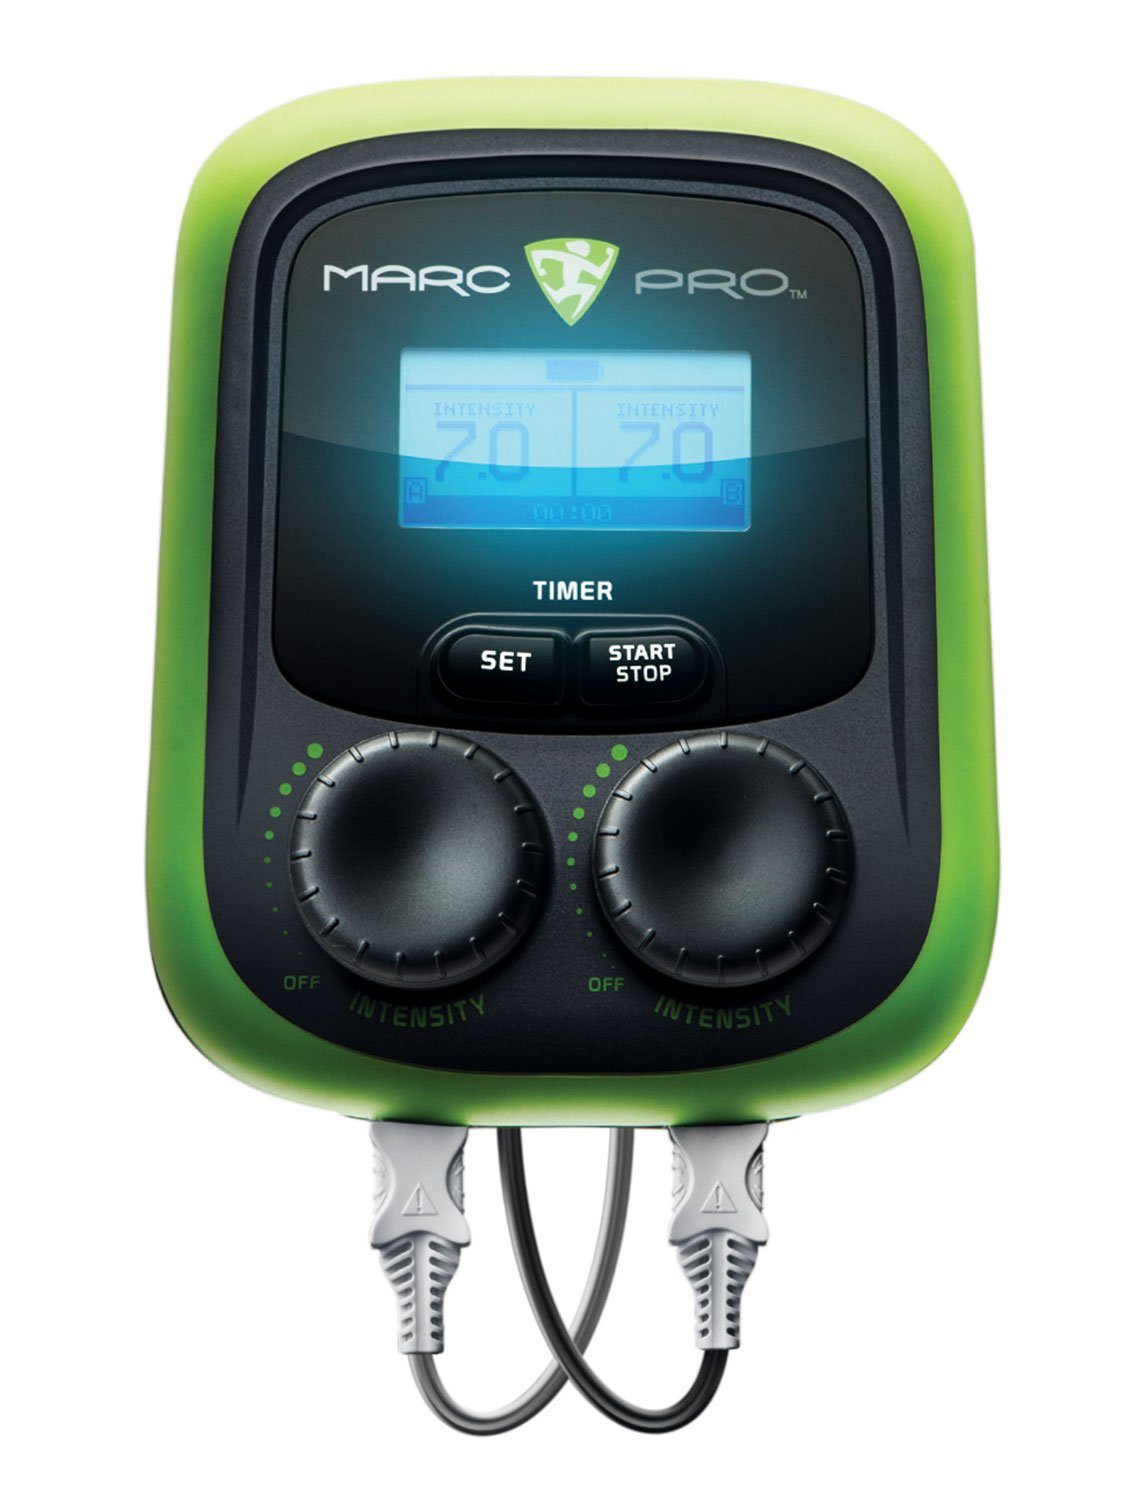 MARC PRO PLUS Muscle Stimulator Tens Unit TENS + EMS 10 Programs WOD Edition